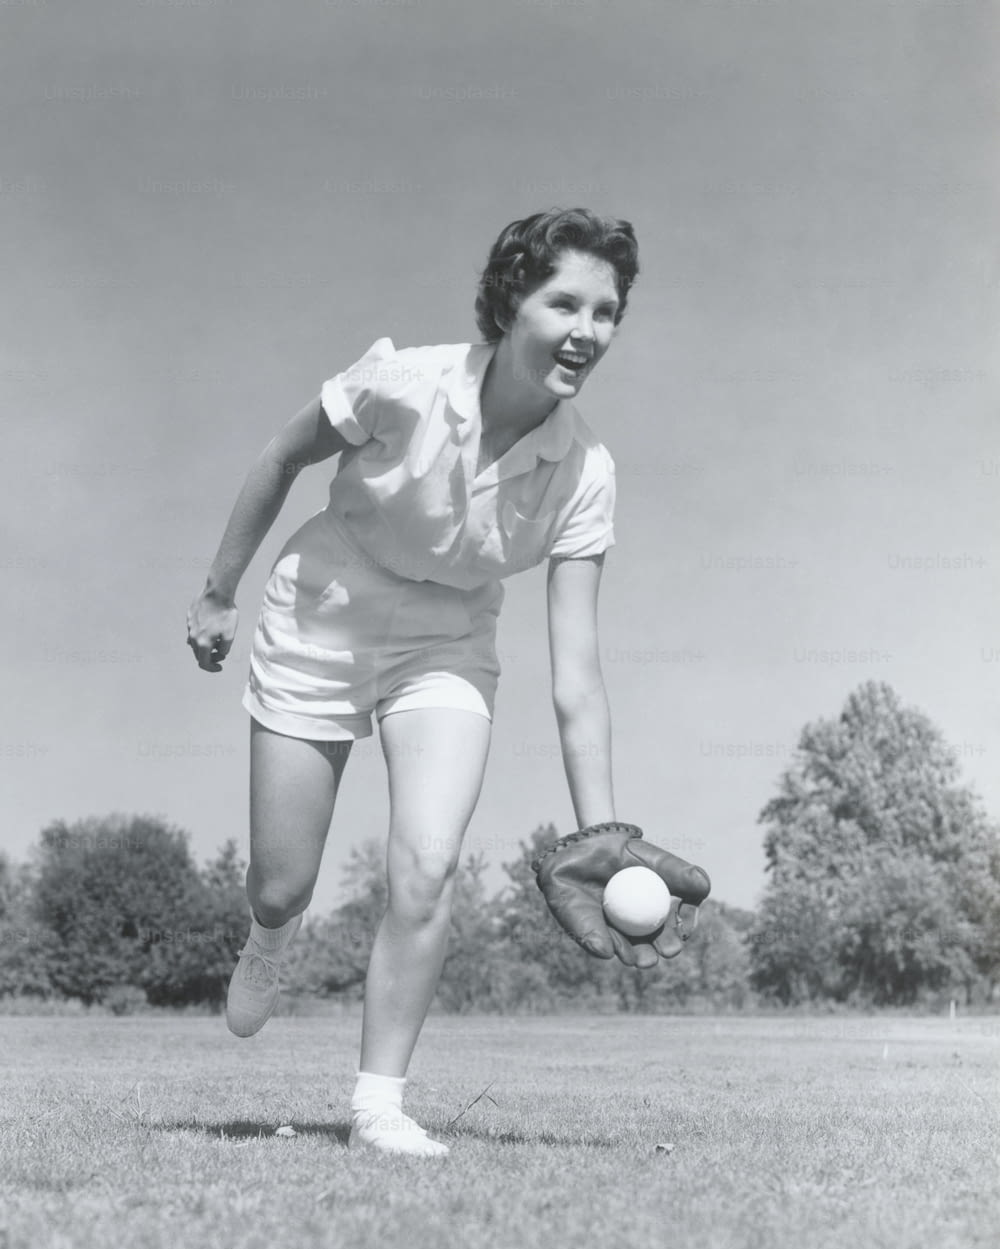 アメリカ合衆国 - 1950年代頃:グローブをはめて野球をキャッチする若い女性。